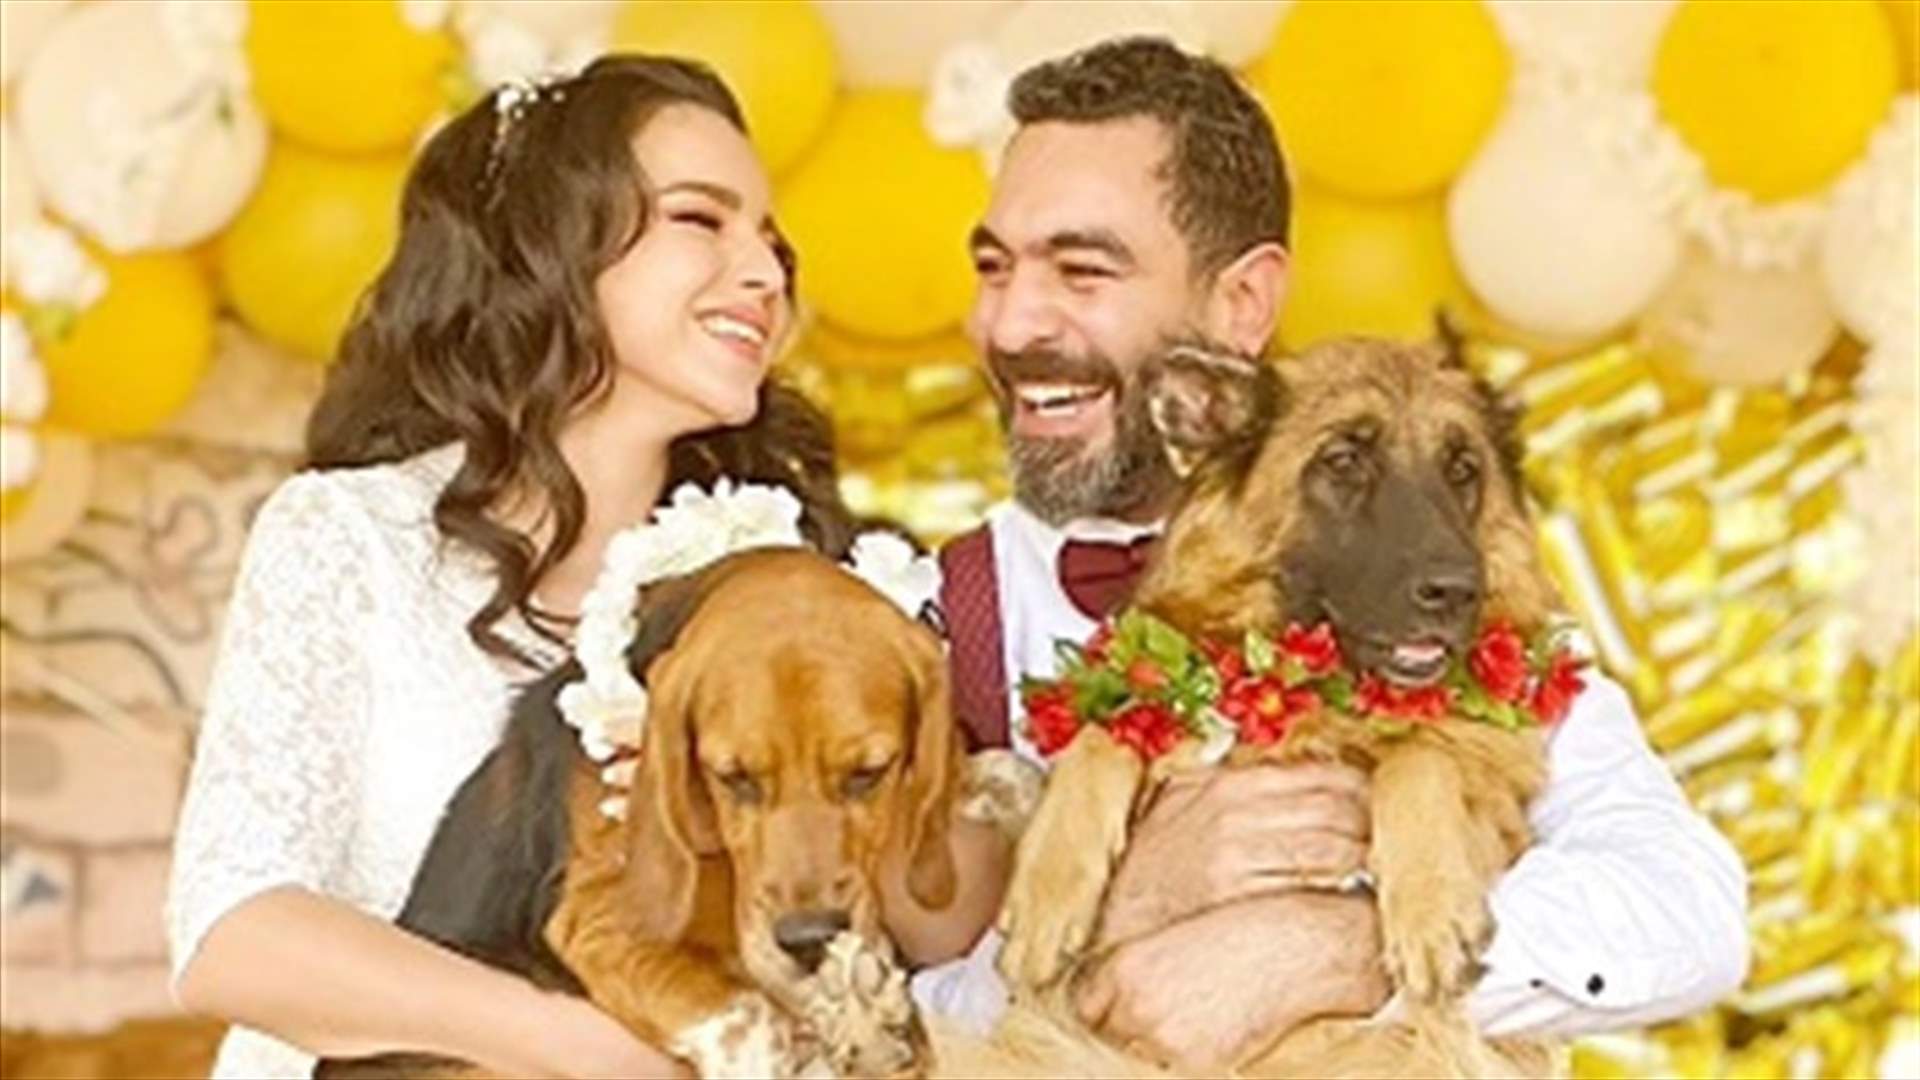 جمعهما حبهما للحيوانات... مصريان يُقيمان حفل زفافهما في ملجأ كلاب (صور)